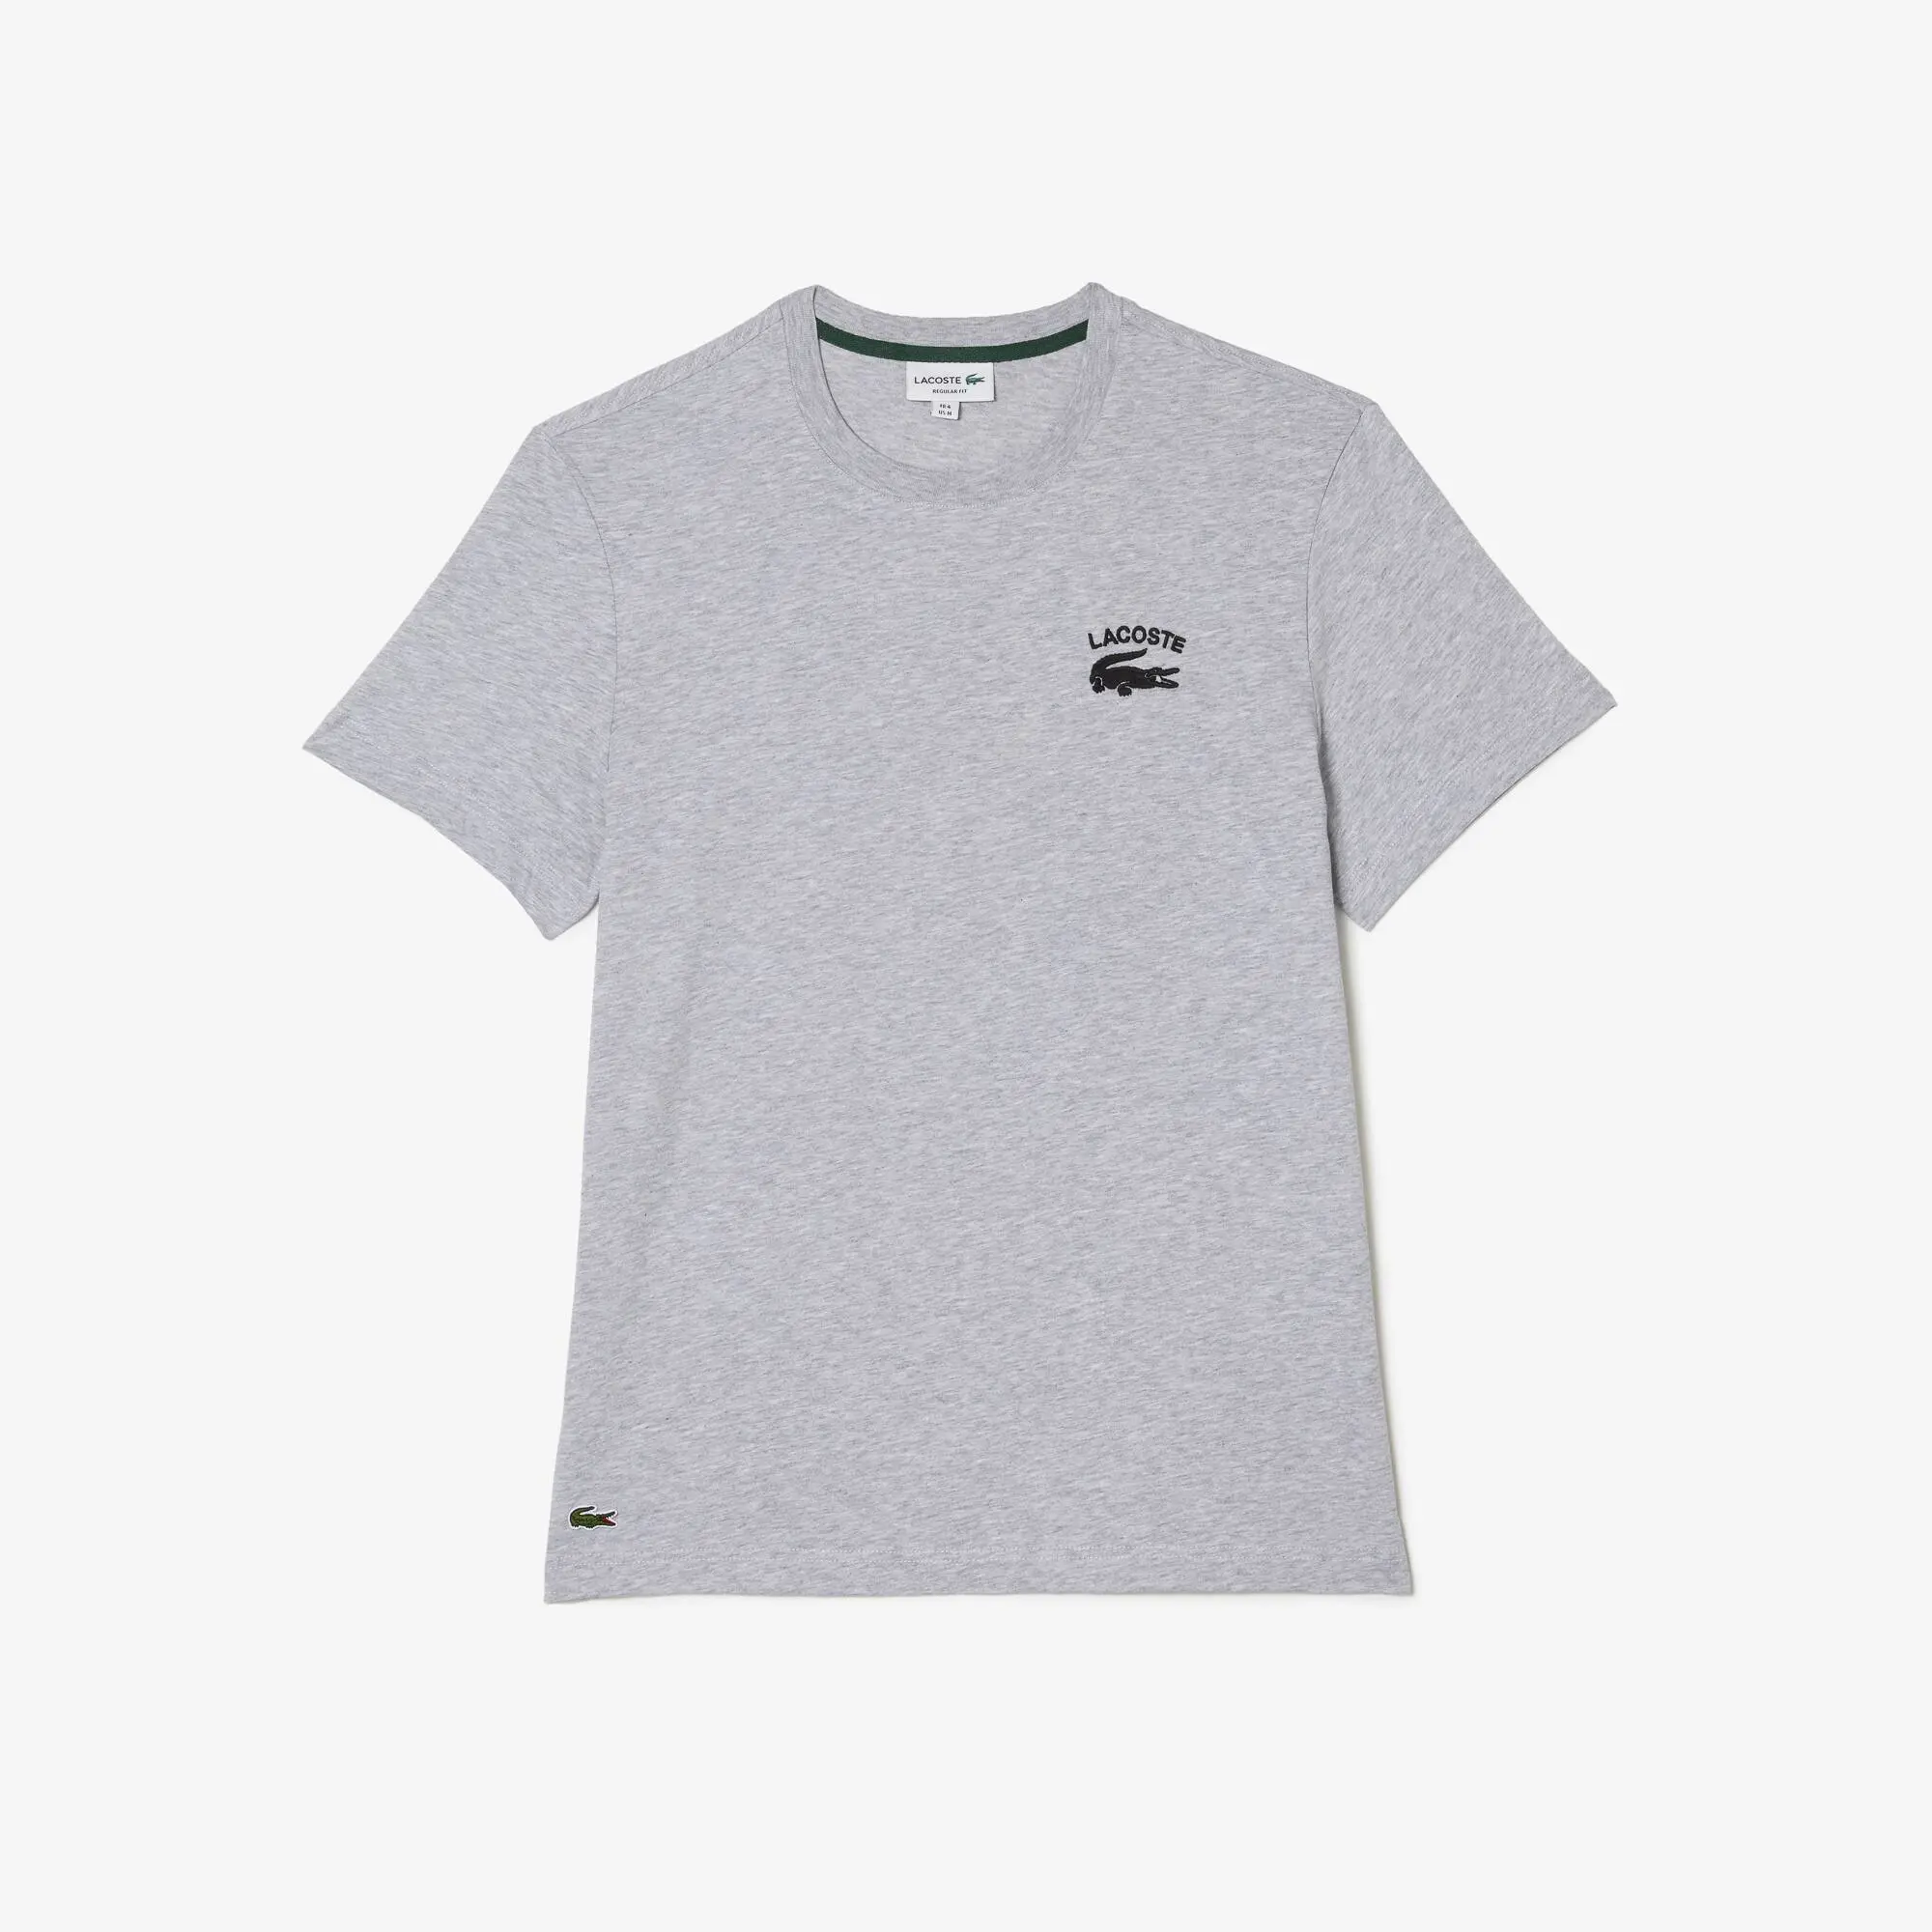 Lacoste Men's Lacoste Regular Fit Cotton Jersey T-shirt. 2